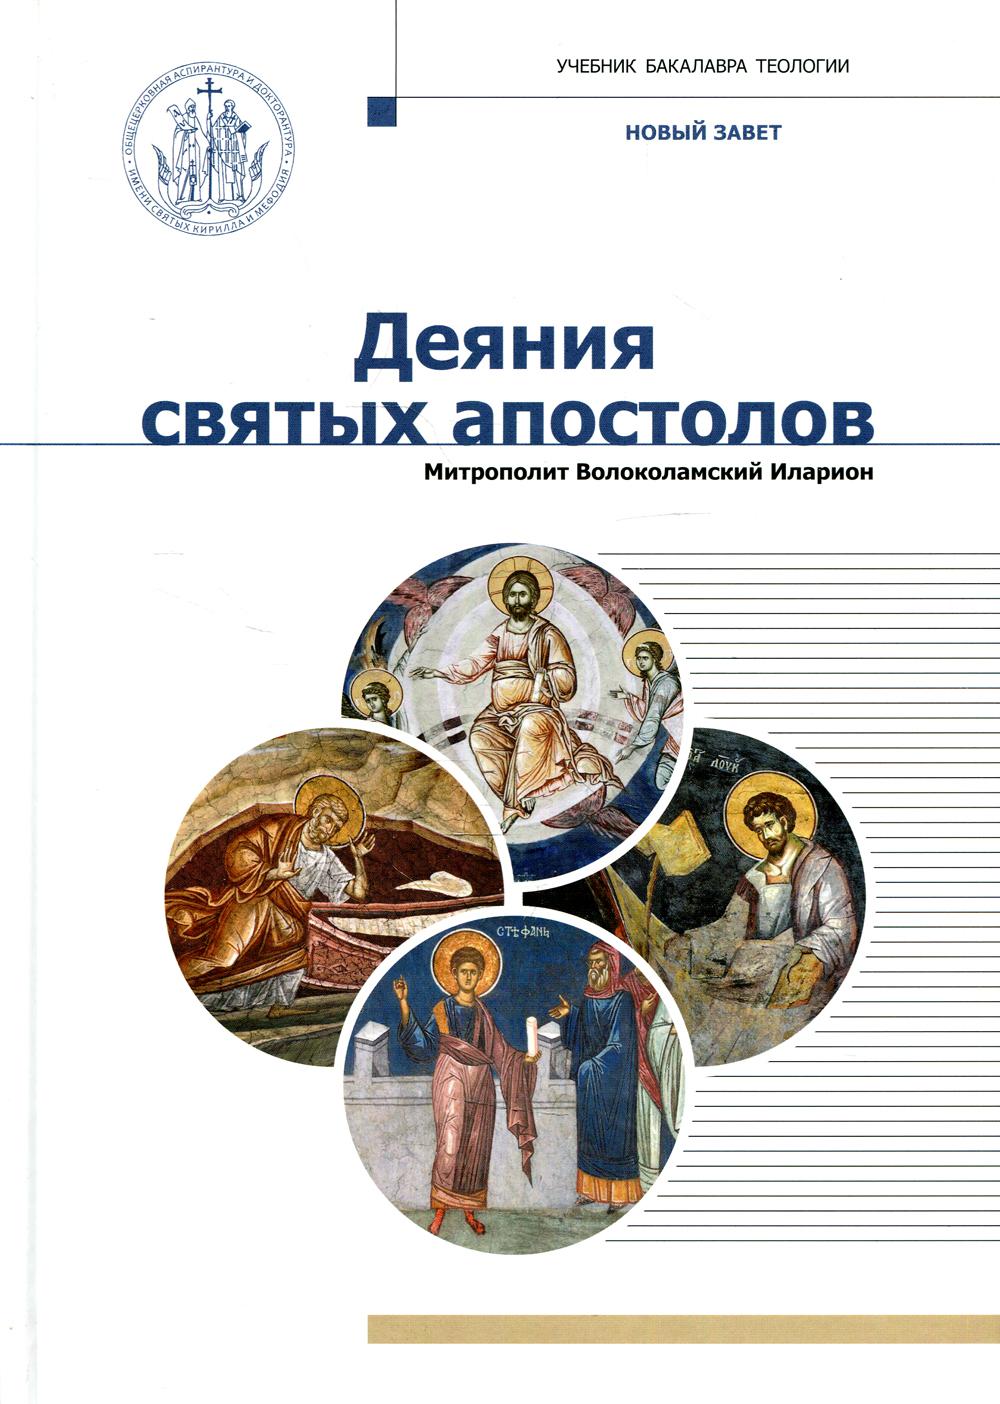 Деяния святых апостолов: Учебник бакалавра теологии